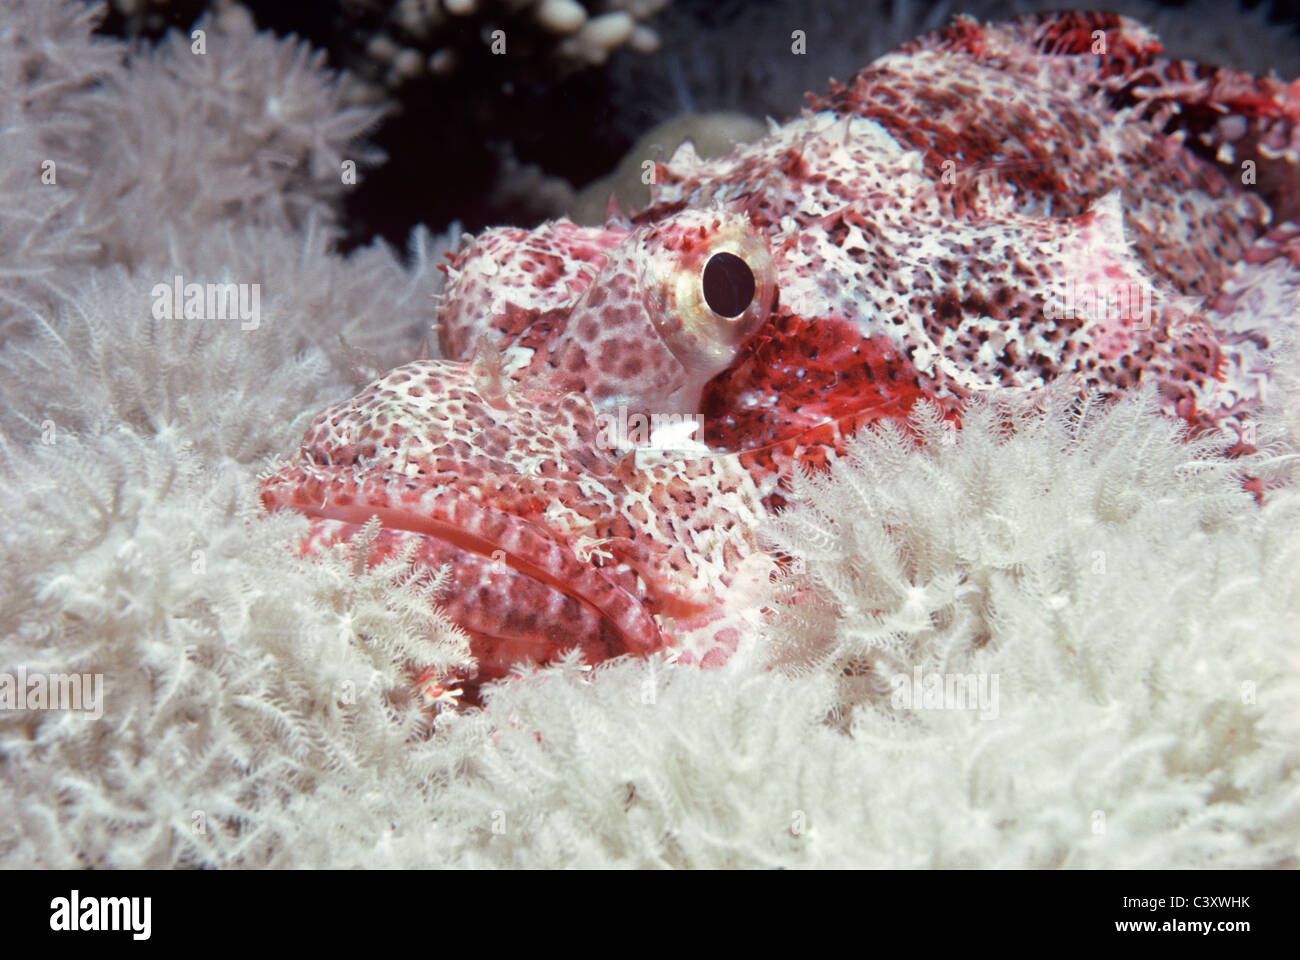 Tassled Scorfani (Scorpaneopsis oxcephalus) mimetizzata tra i coralli molli. Egitto - Mar Rosso Foto Stock